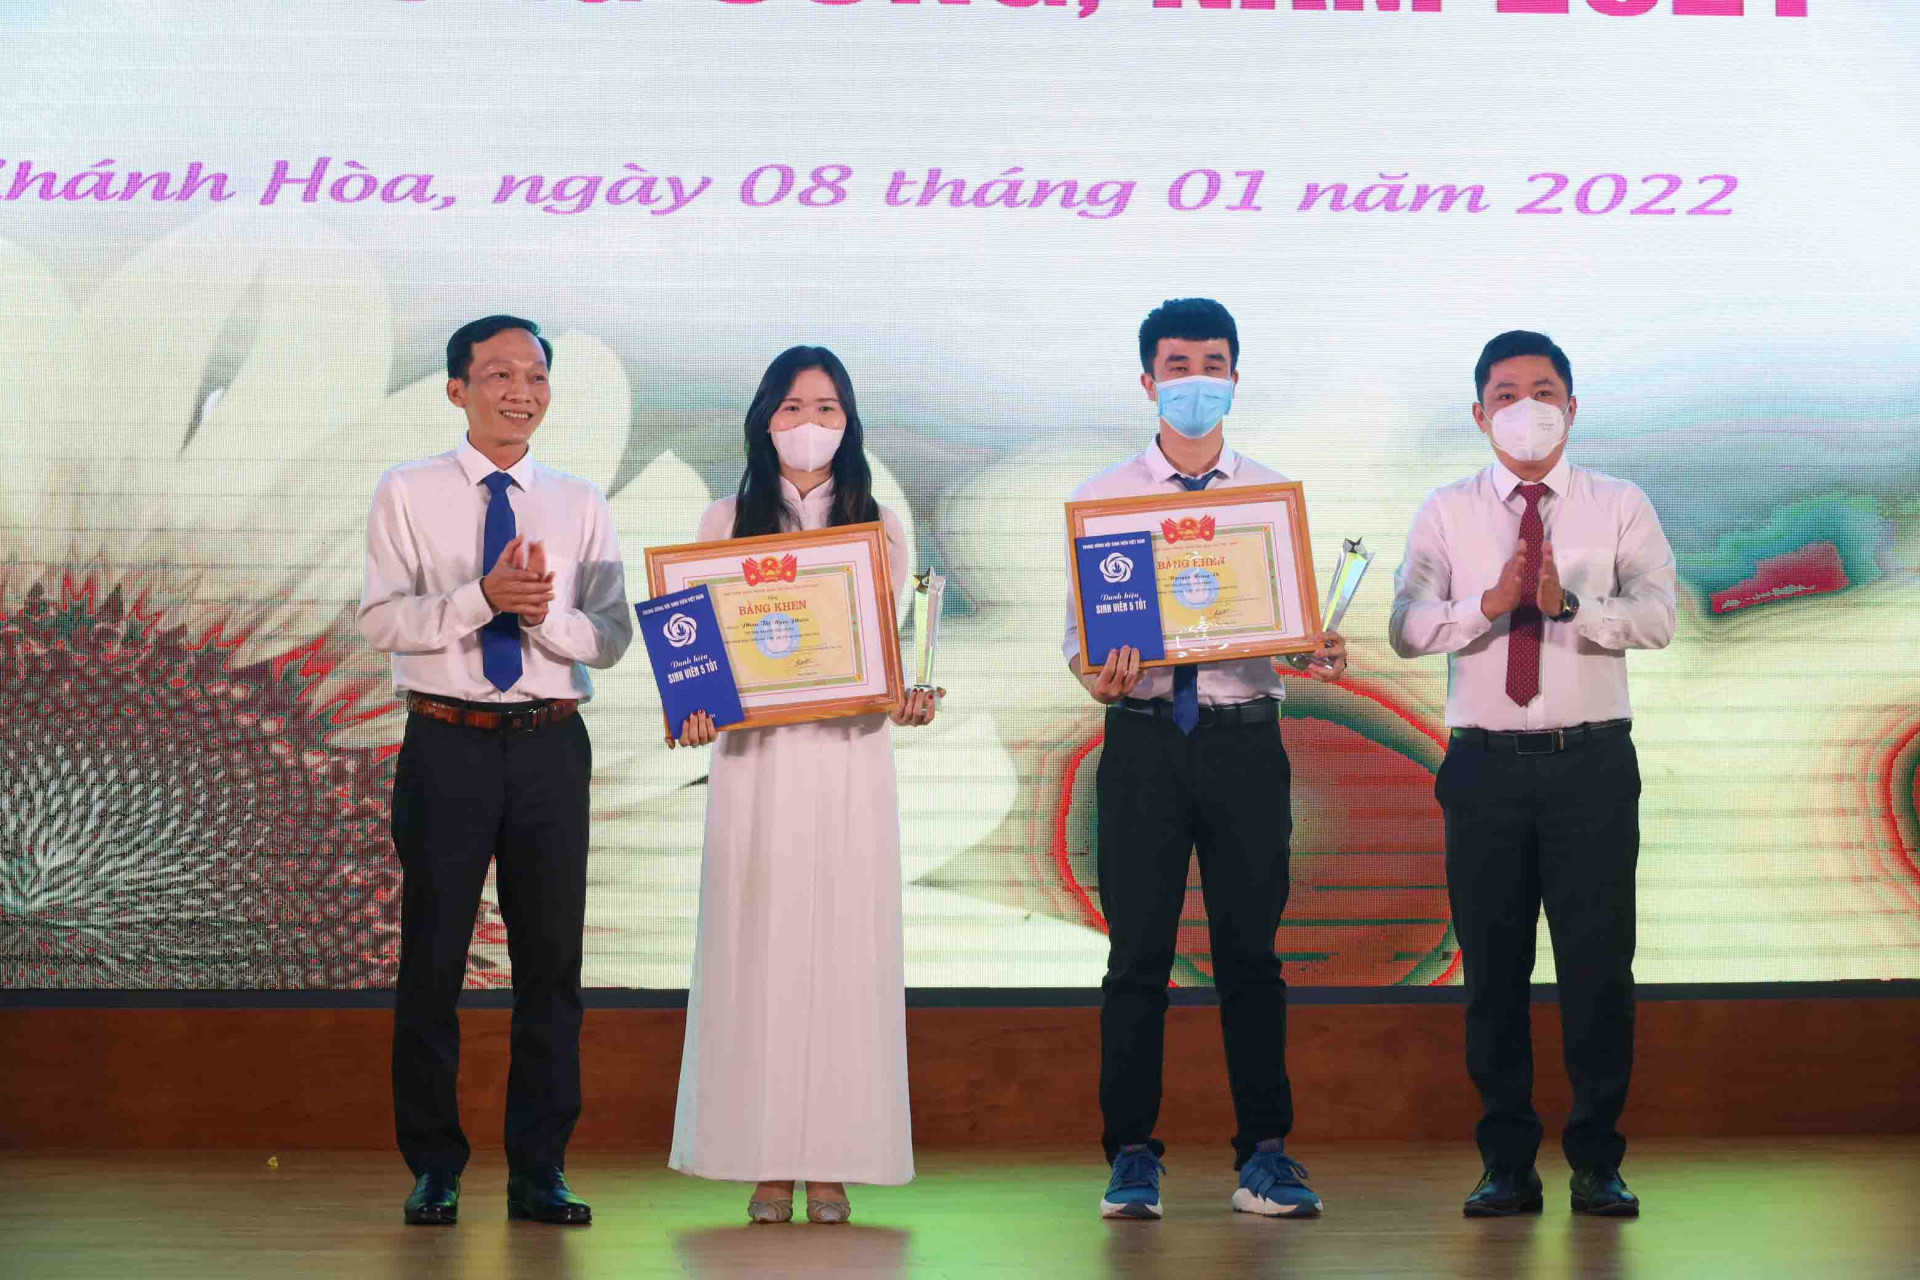 Đại diện ban tổ chức tuyên dương sinh viên Nguyễn Hùng Vĩ và sinh viên Phan Thị Ngọc Phước đạt danh hiệu “Sinh viên 5 tốt” cấp Trung ương.